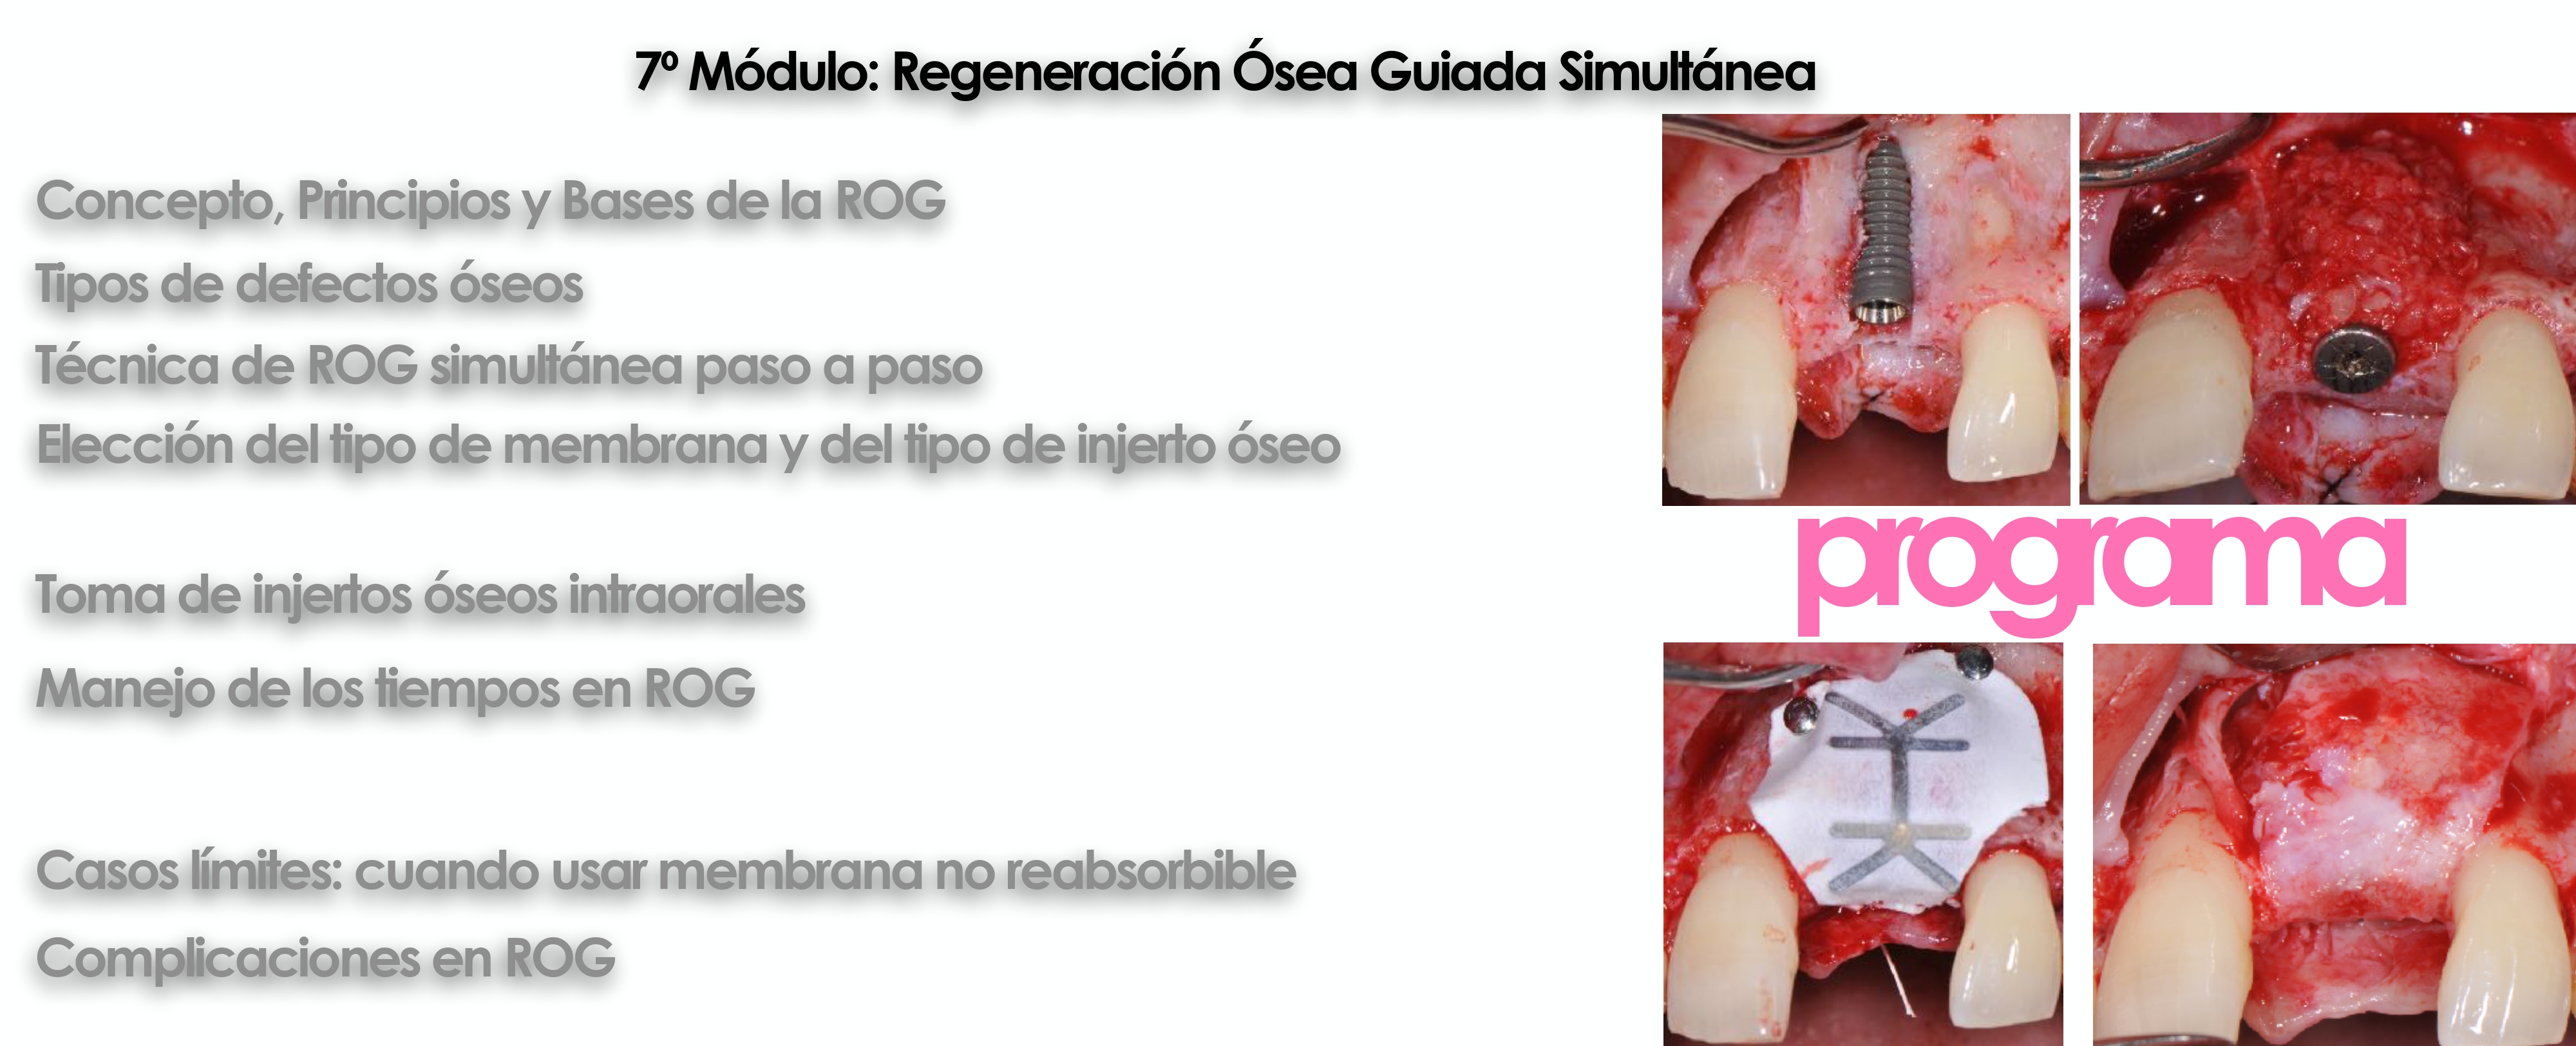 Curso cirugía periodontal e implantológica 11